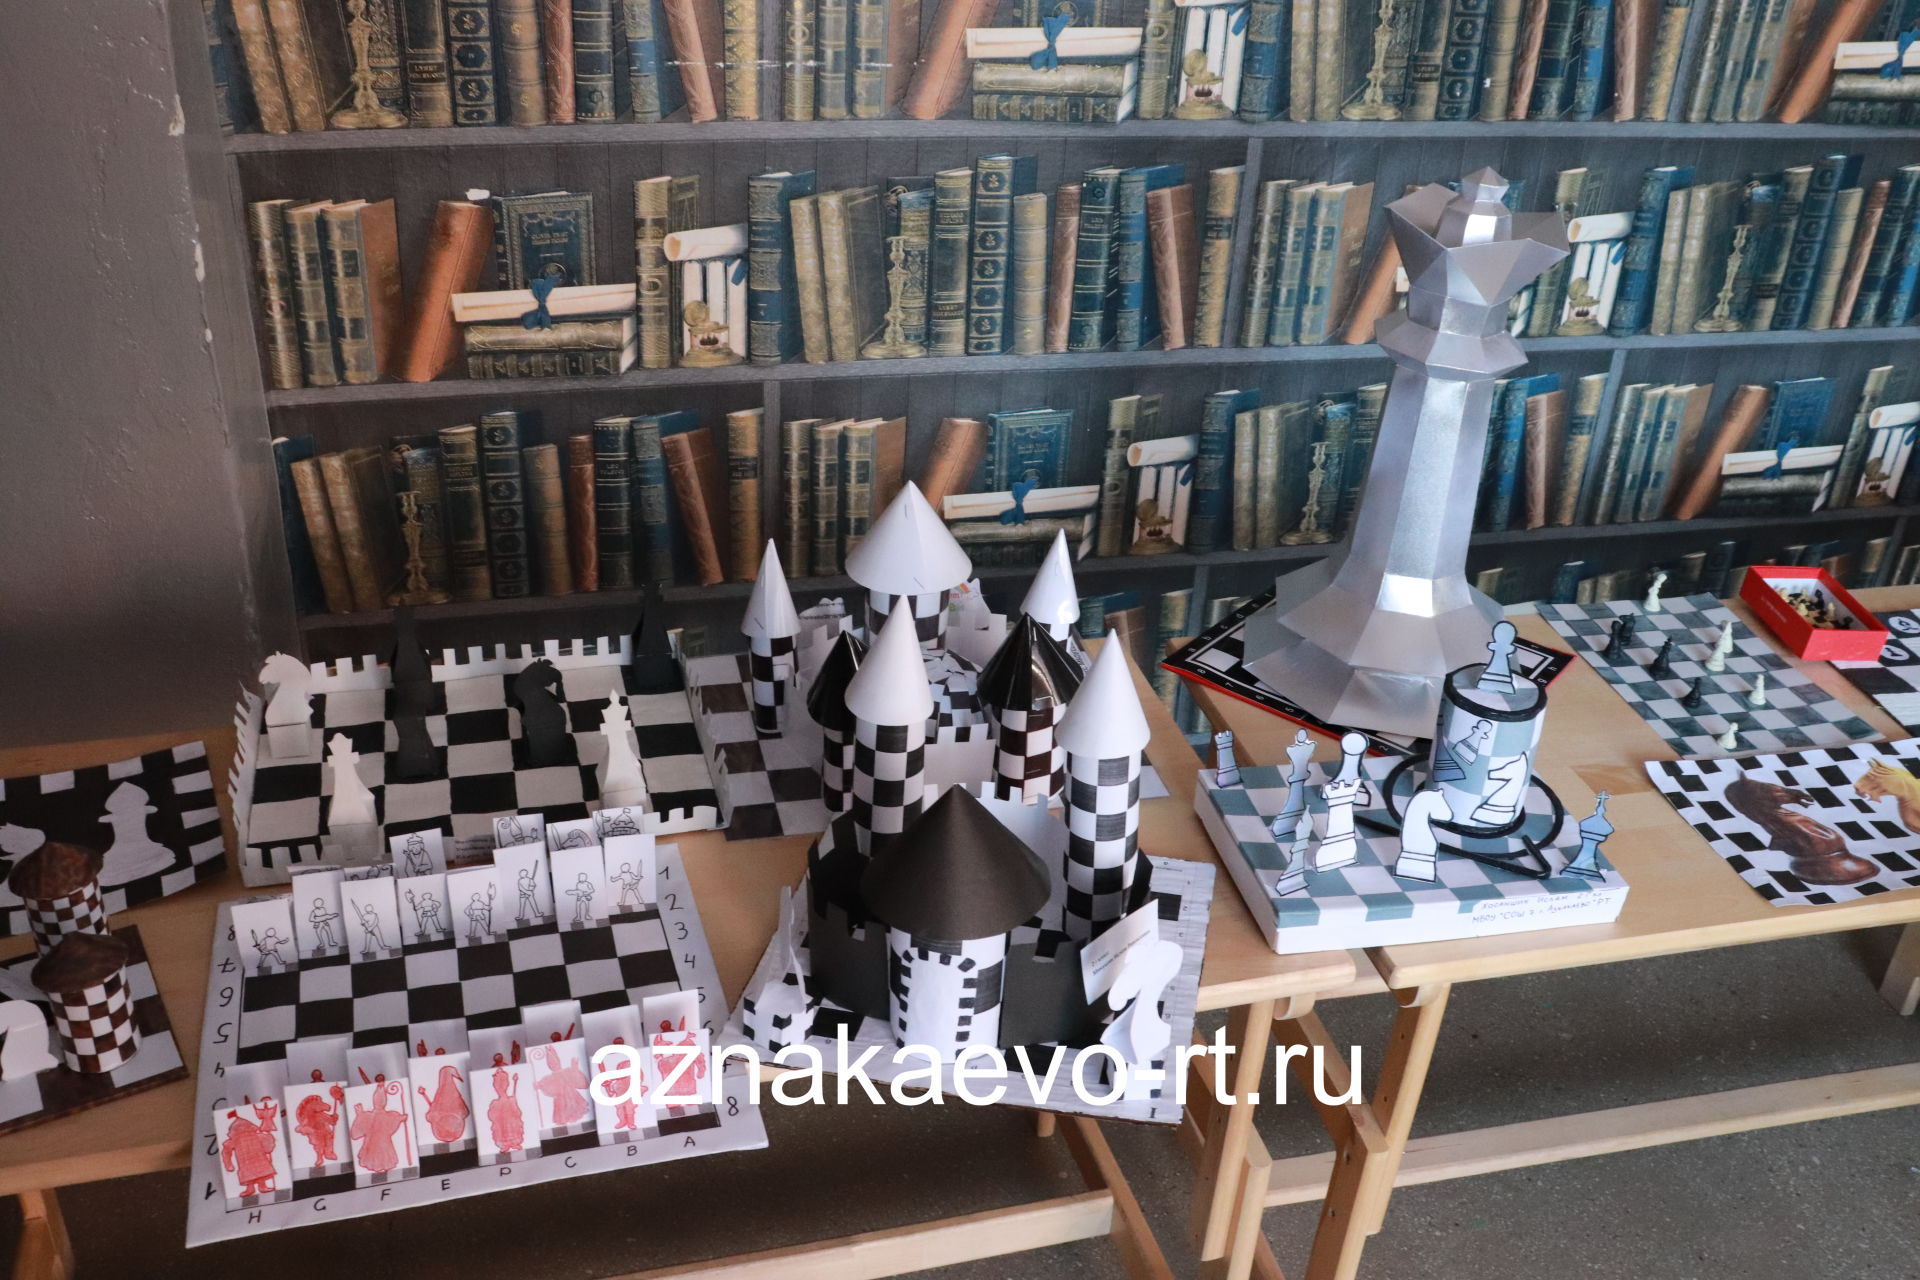 Азнакаевским учащимся открывается путь в большие шахматы